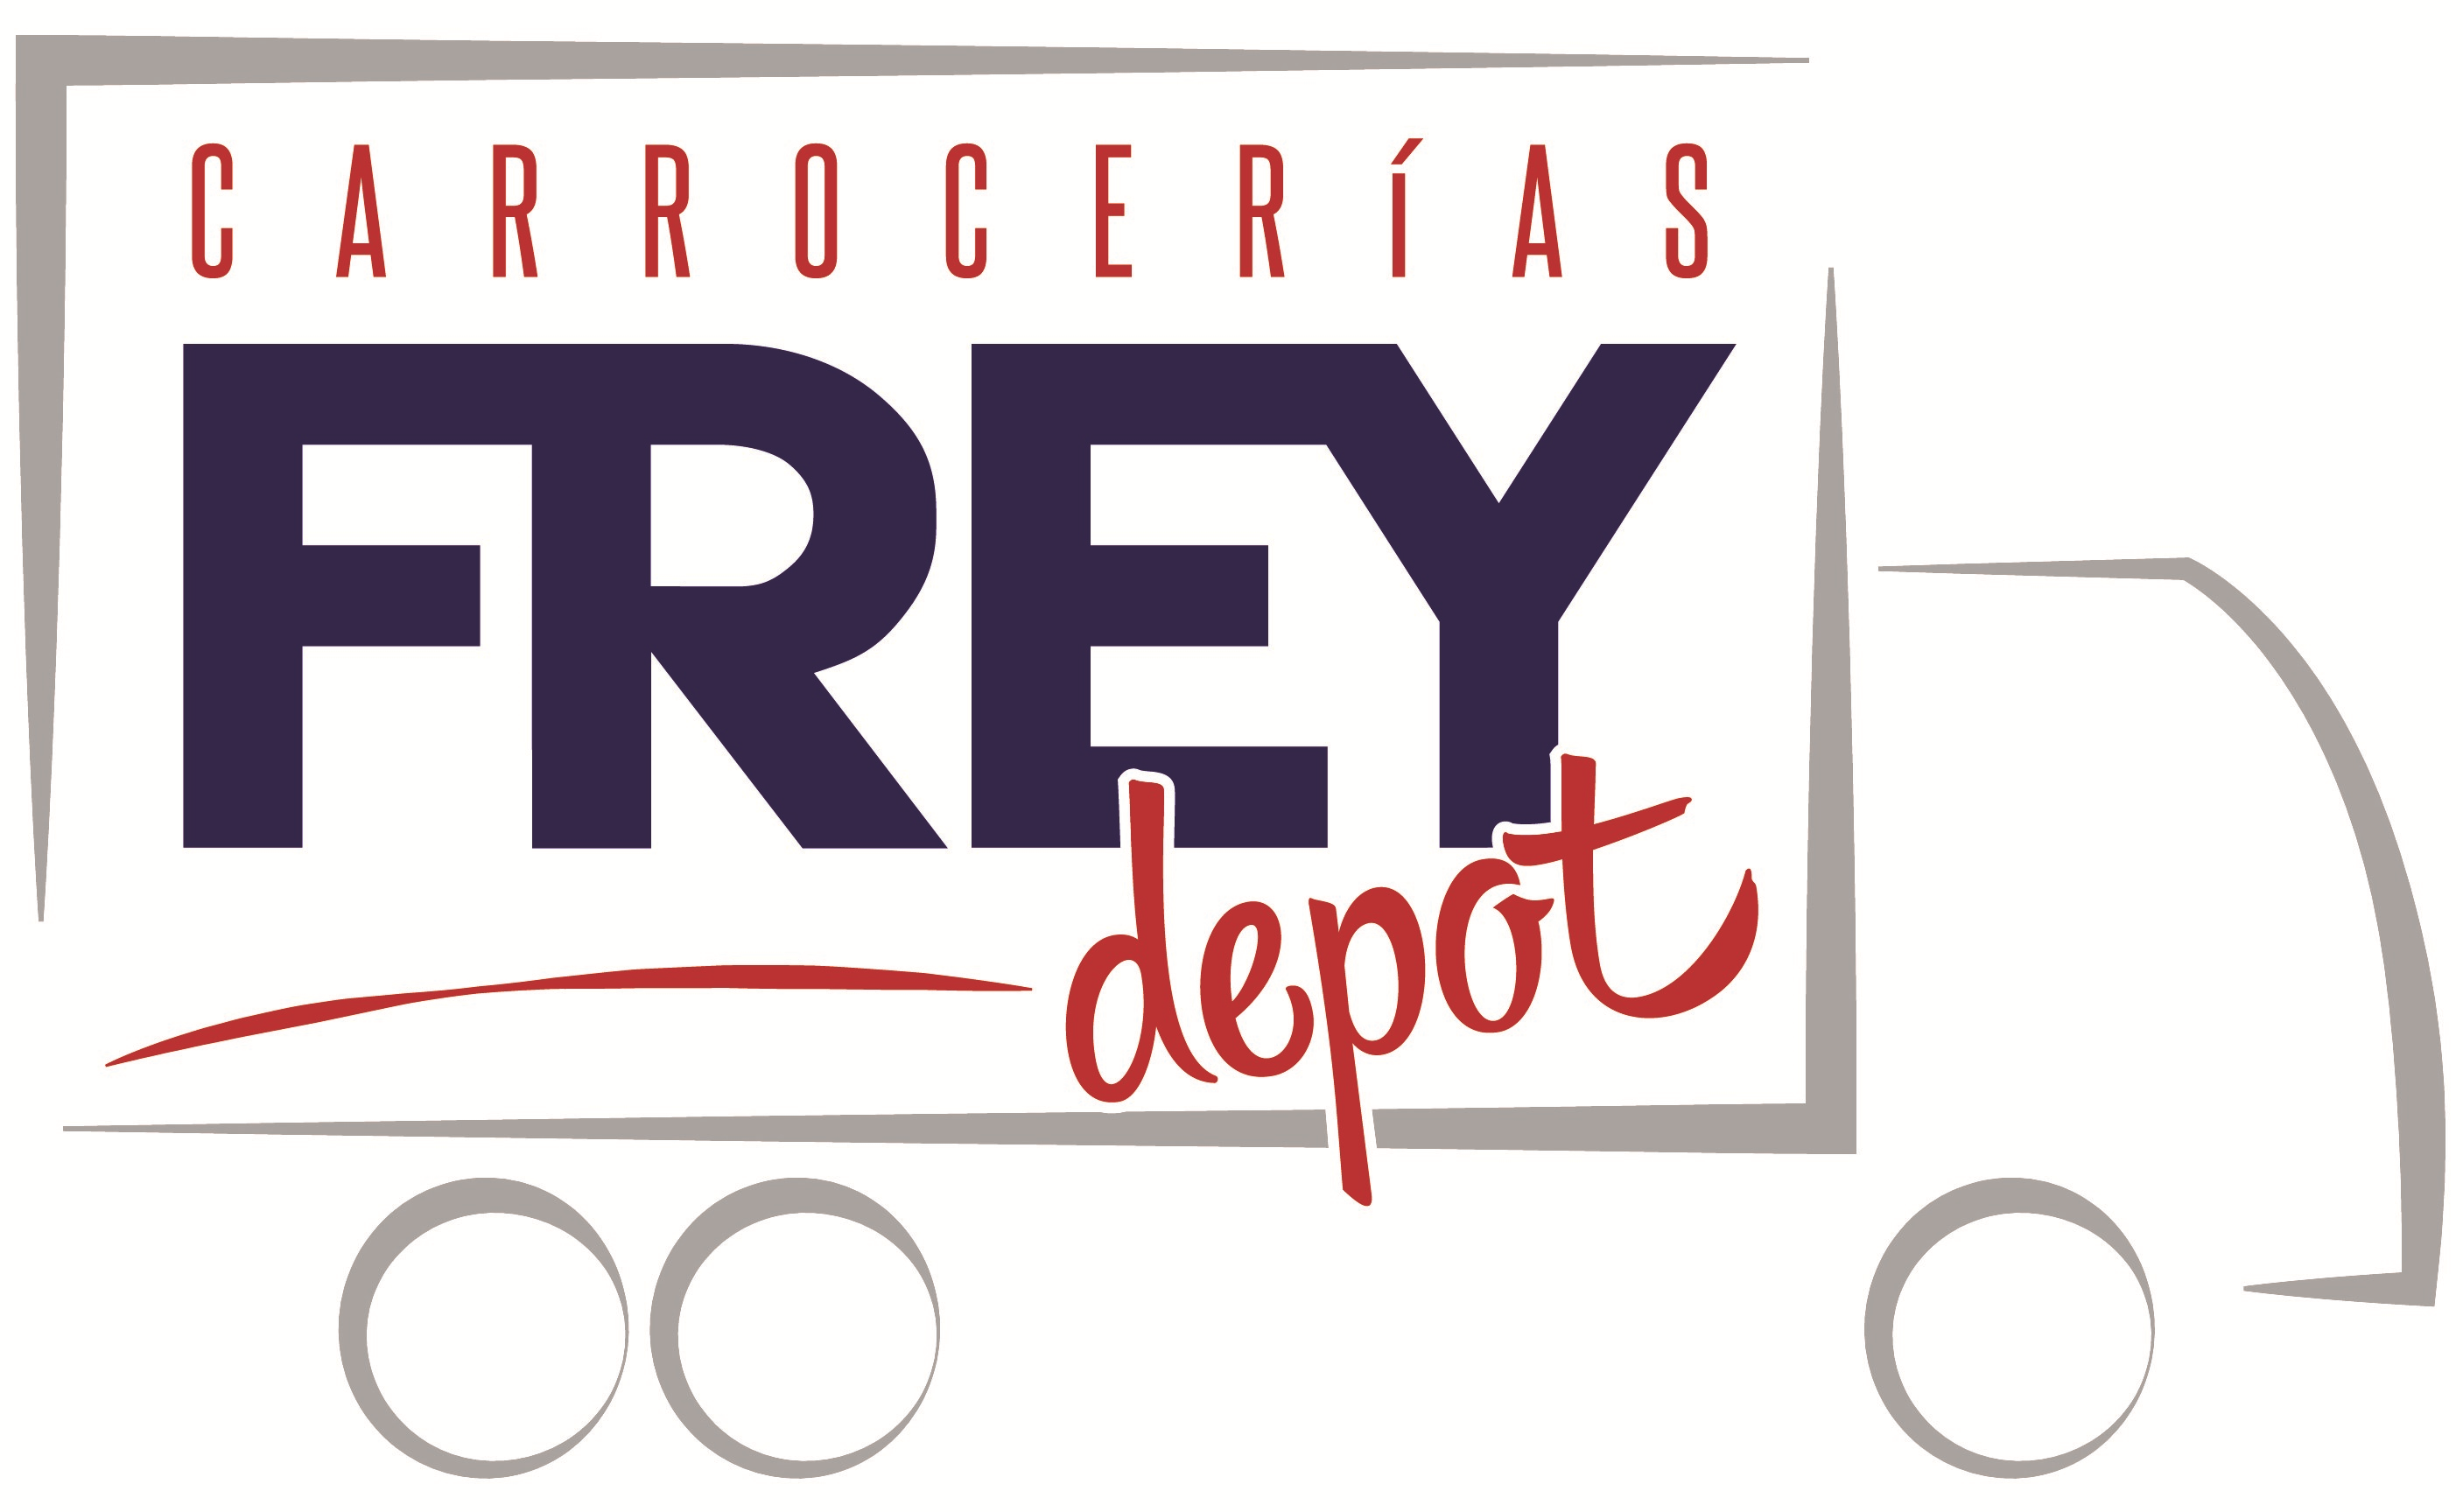 Carrocerias Frey Depot